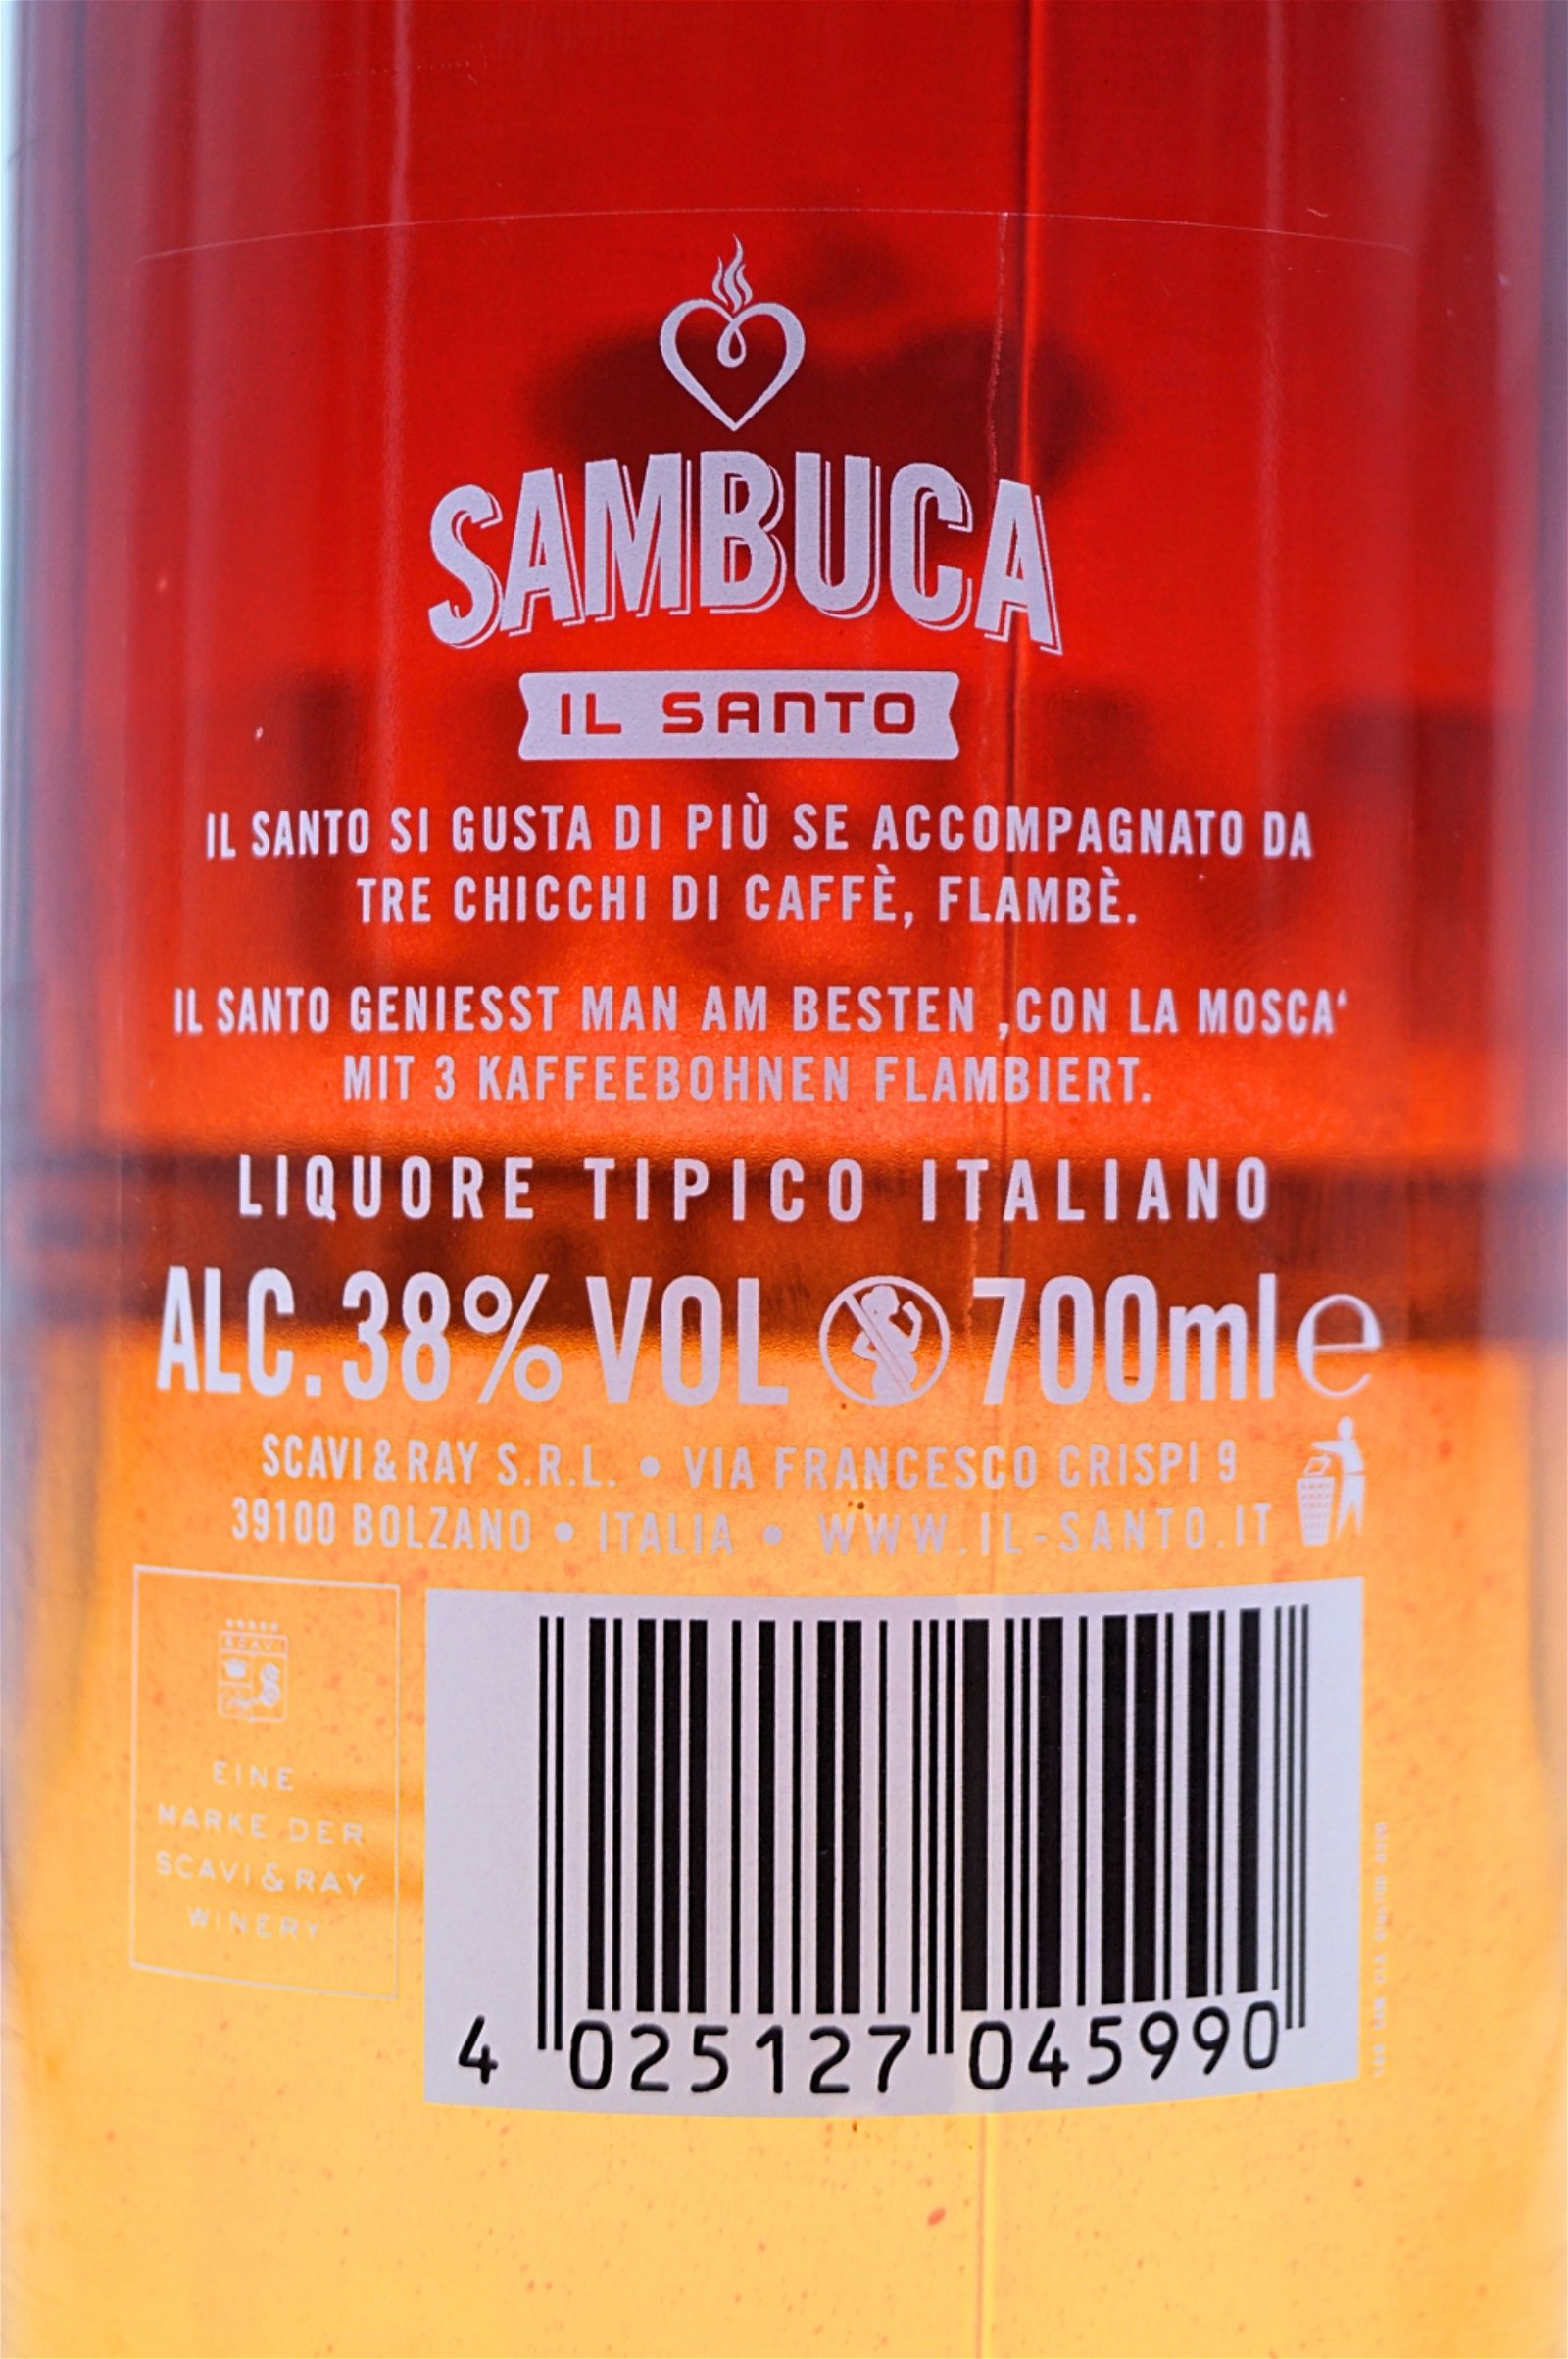 Il Santo Sambuca Classico 6 x 0,7 L Flaschen Sparset